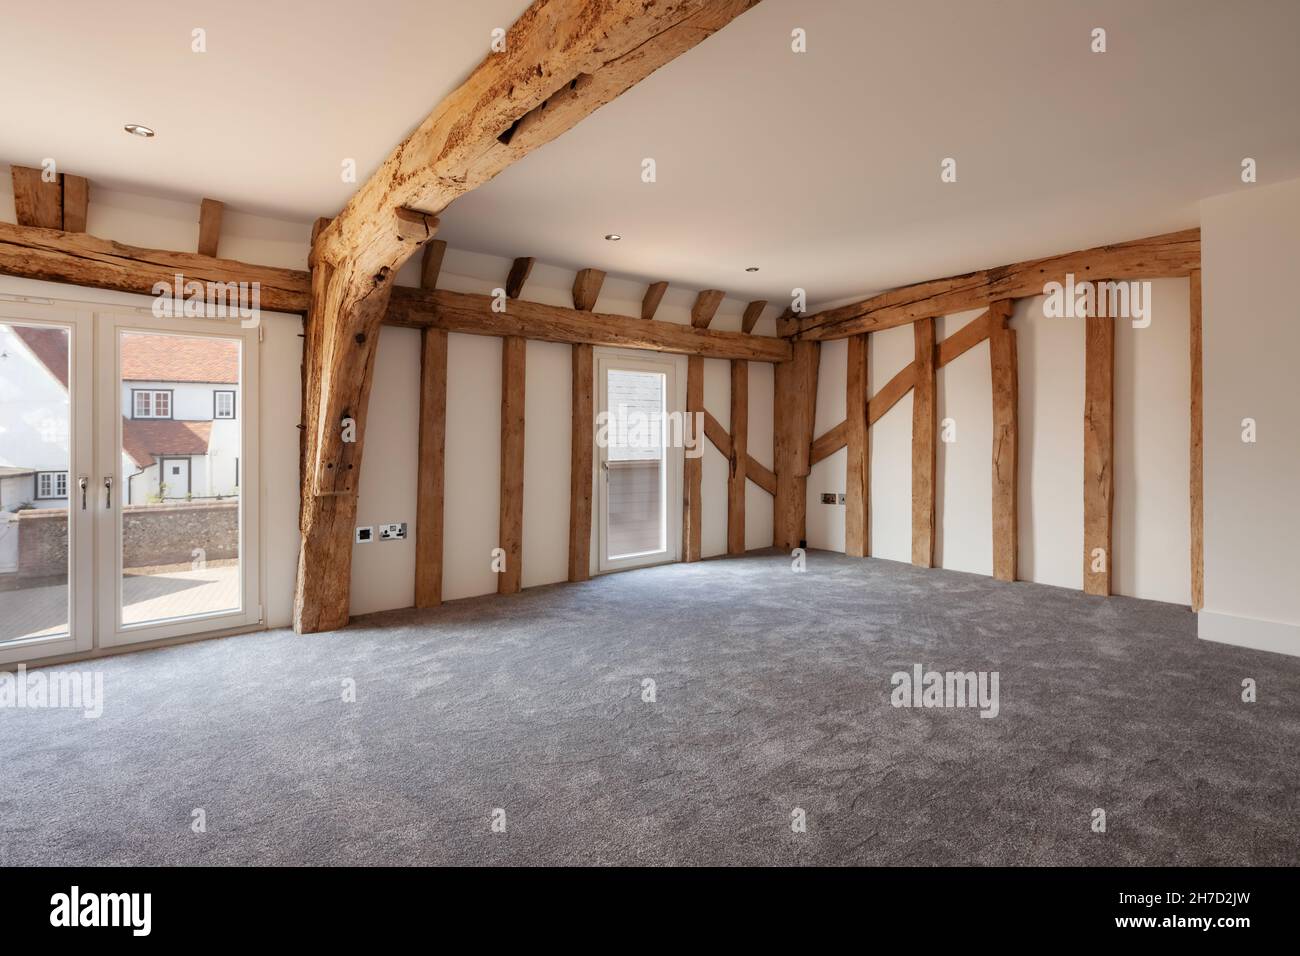 Great Sampford, Essex - April 16 2020: Das Schlafzimmer wurde aus einer verrobten Farmscheune umgebaut, um eine wunderschöne Unterkunft zu bieten, die ursprüngliche Merkmale beibehalten hat Stockfoto